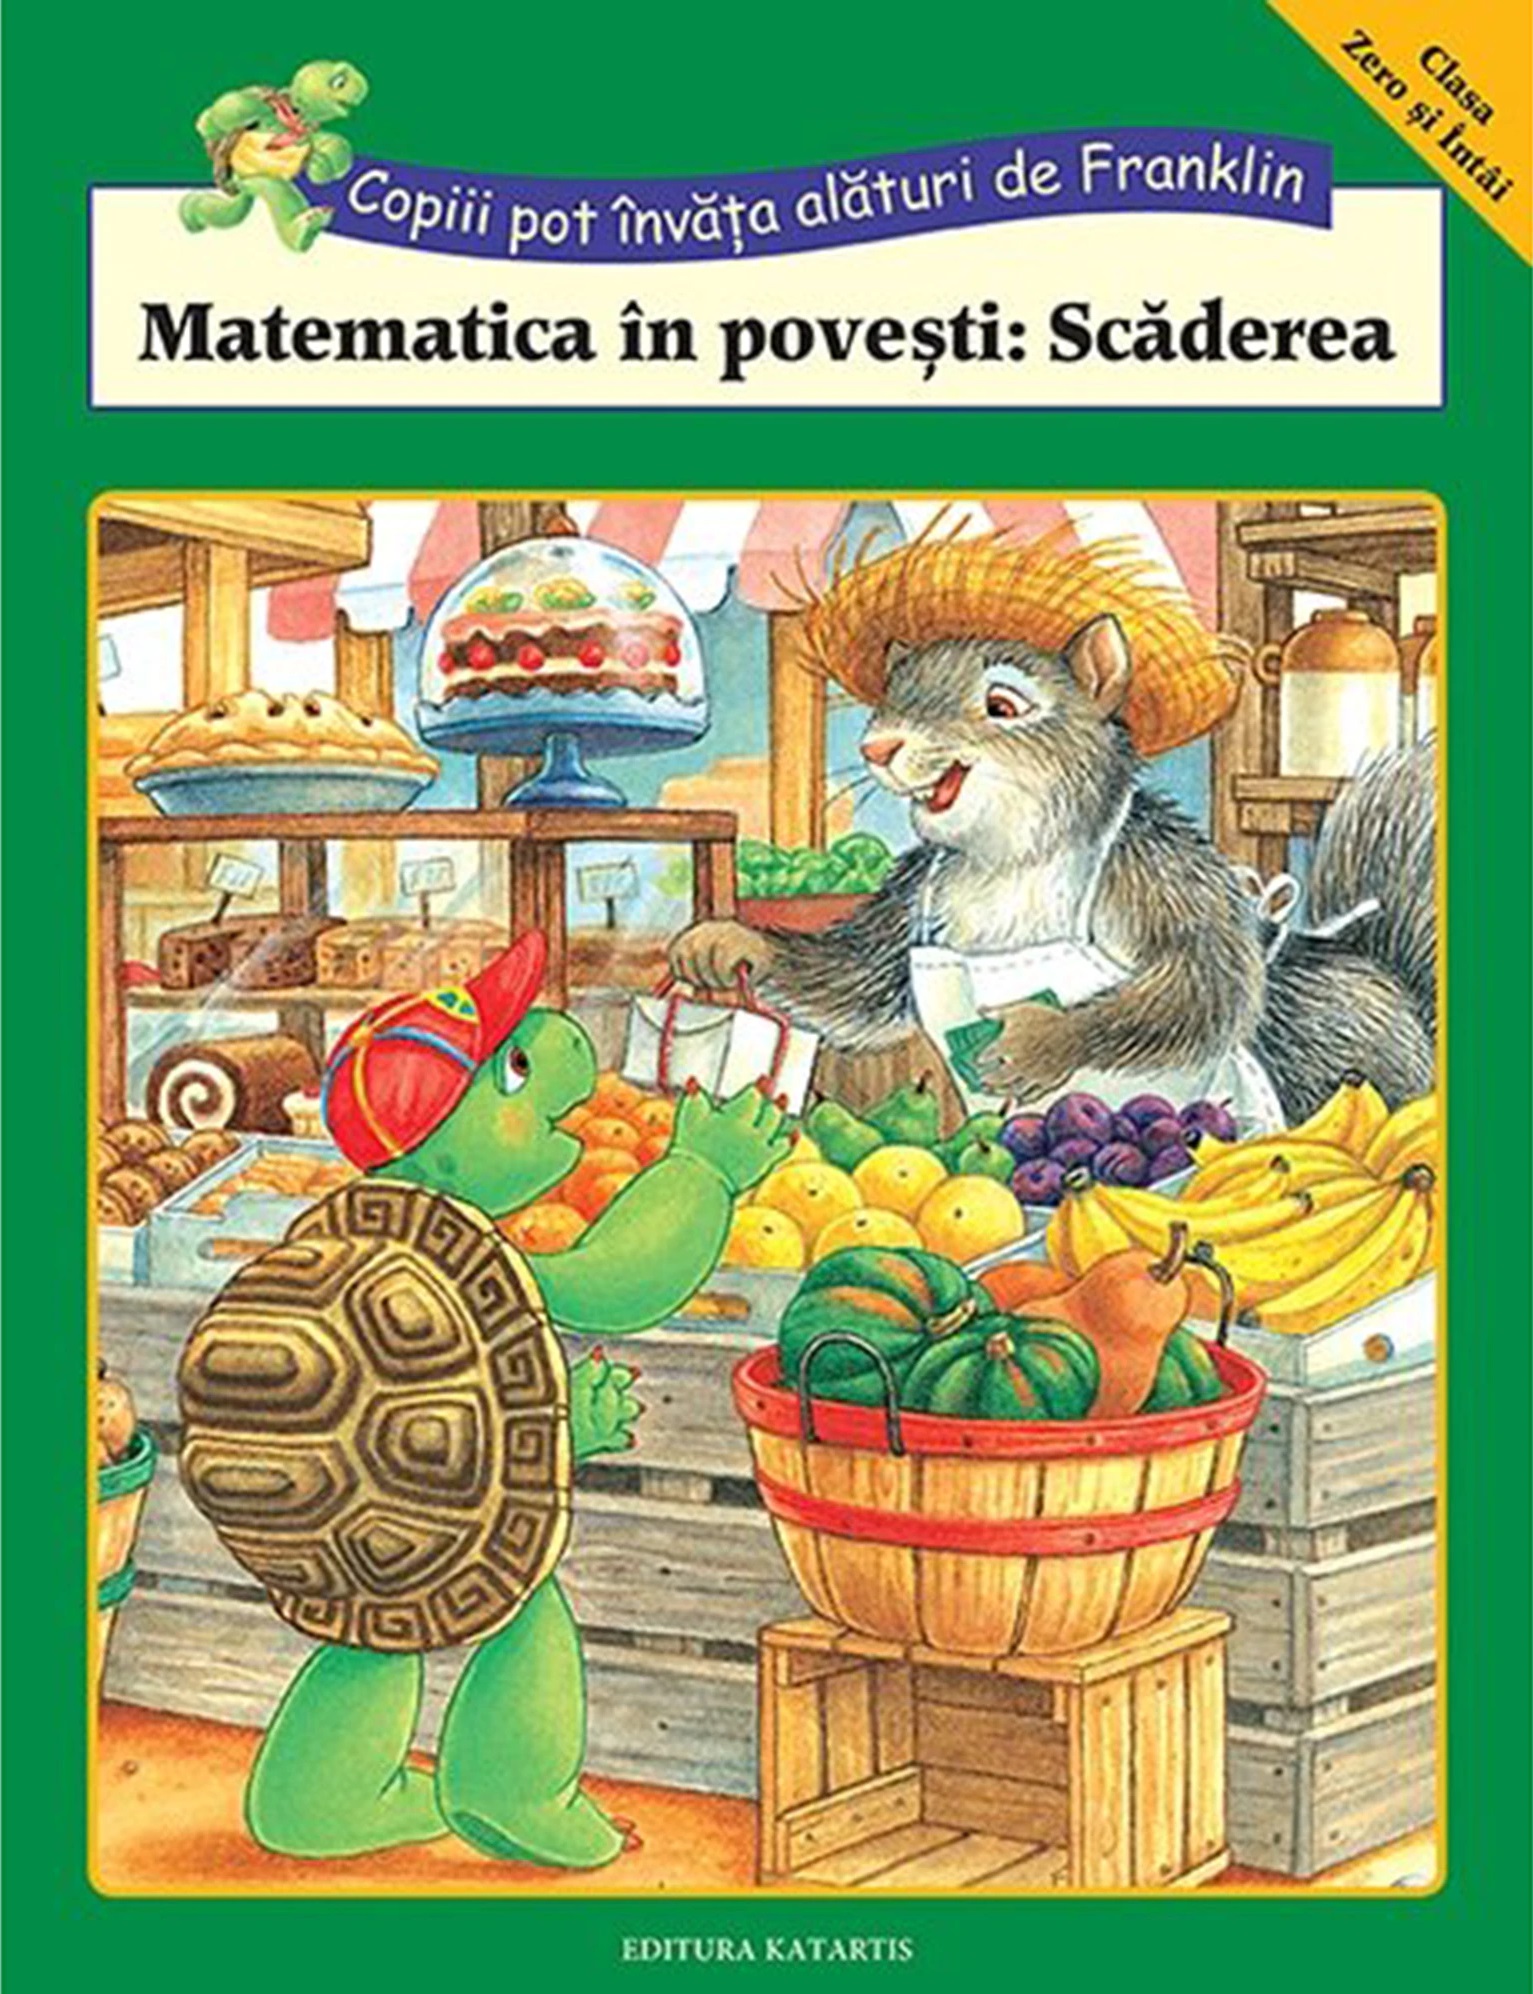 PDF Matematica in povesti: Scaderea | carturesti.ro Scolaresti